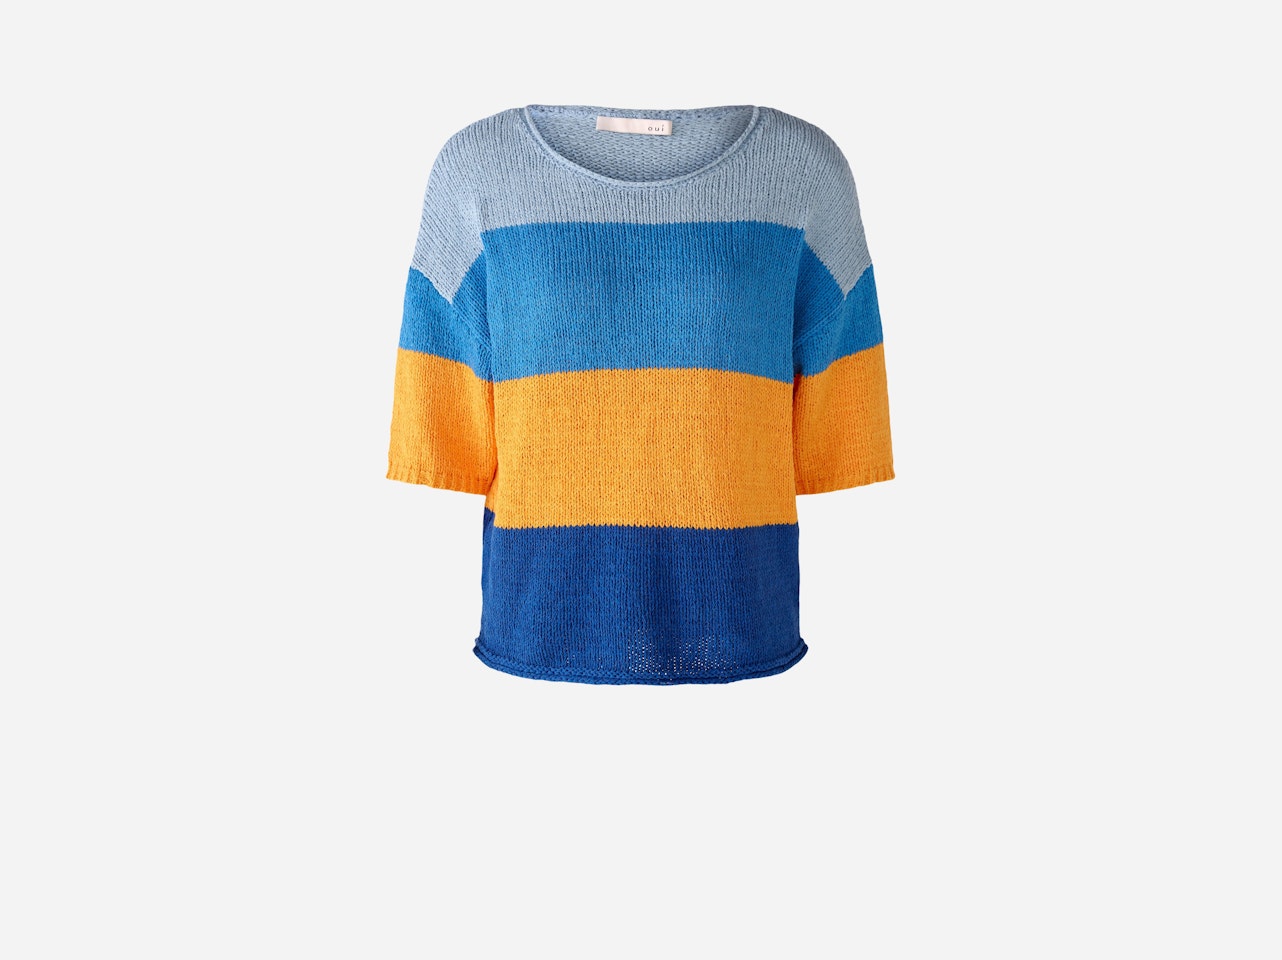 Bild 7 von Knitted jumper cotton blend in blue orange | Oui